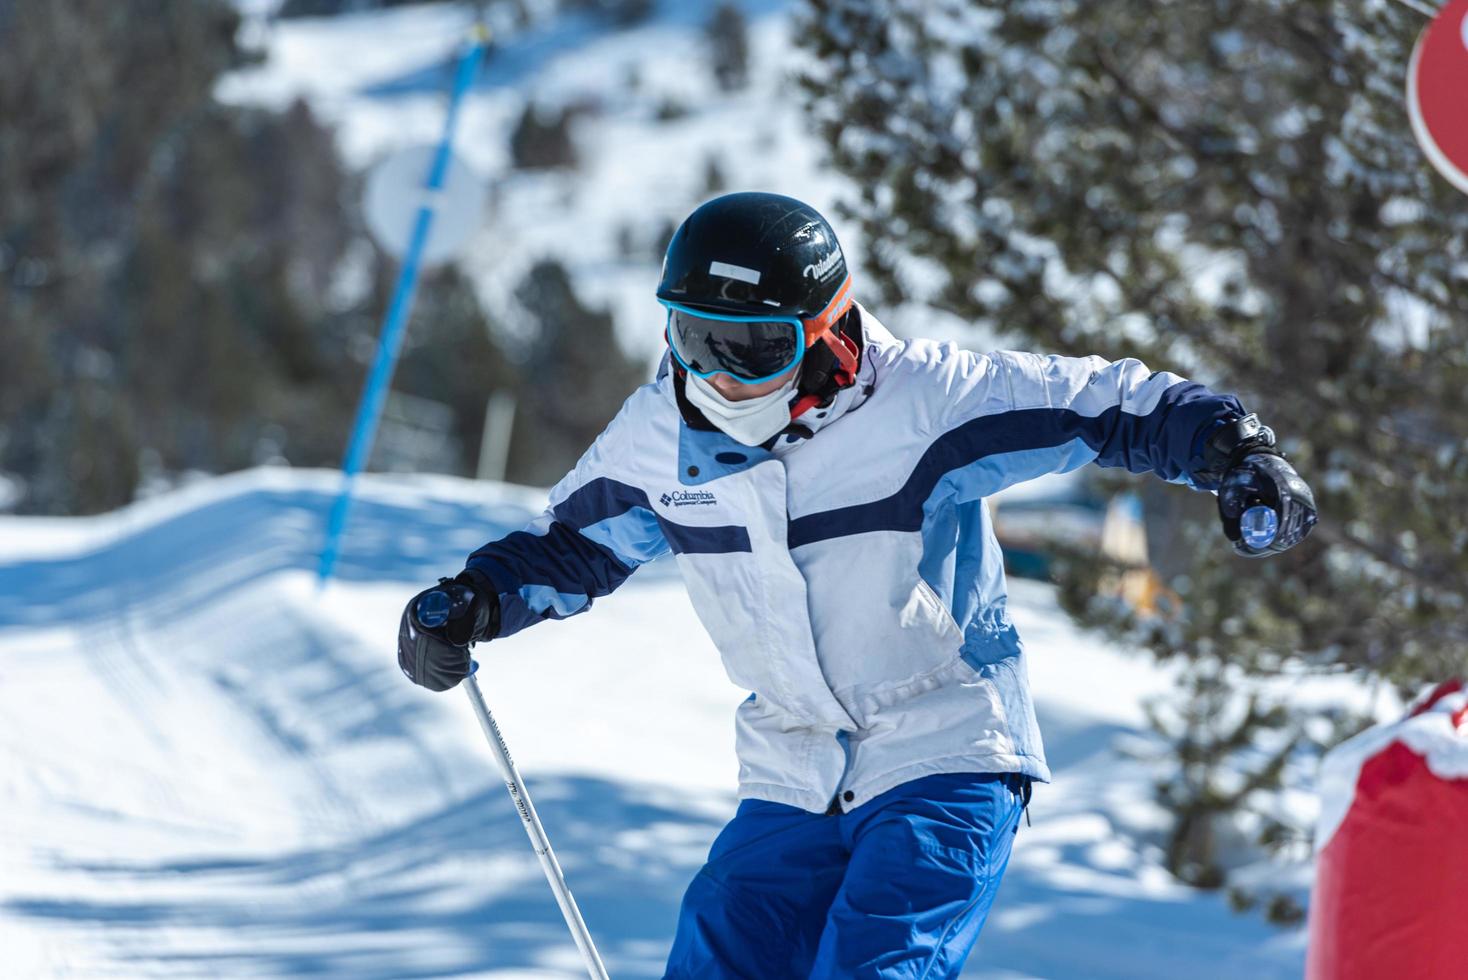 grandvalira, andorra. 2022 15 maart. mensen skiën op de hellingen van het skigebied grandvalira in andorra in 2022. foto